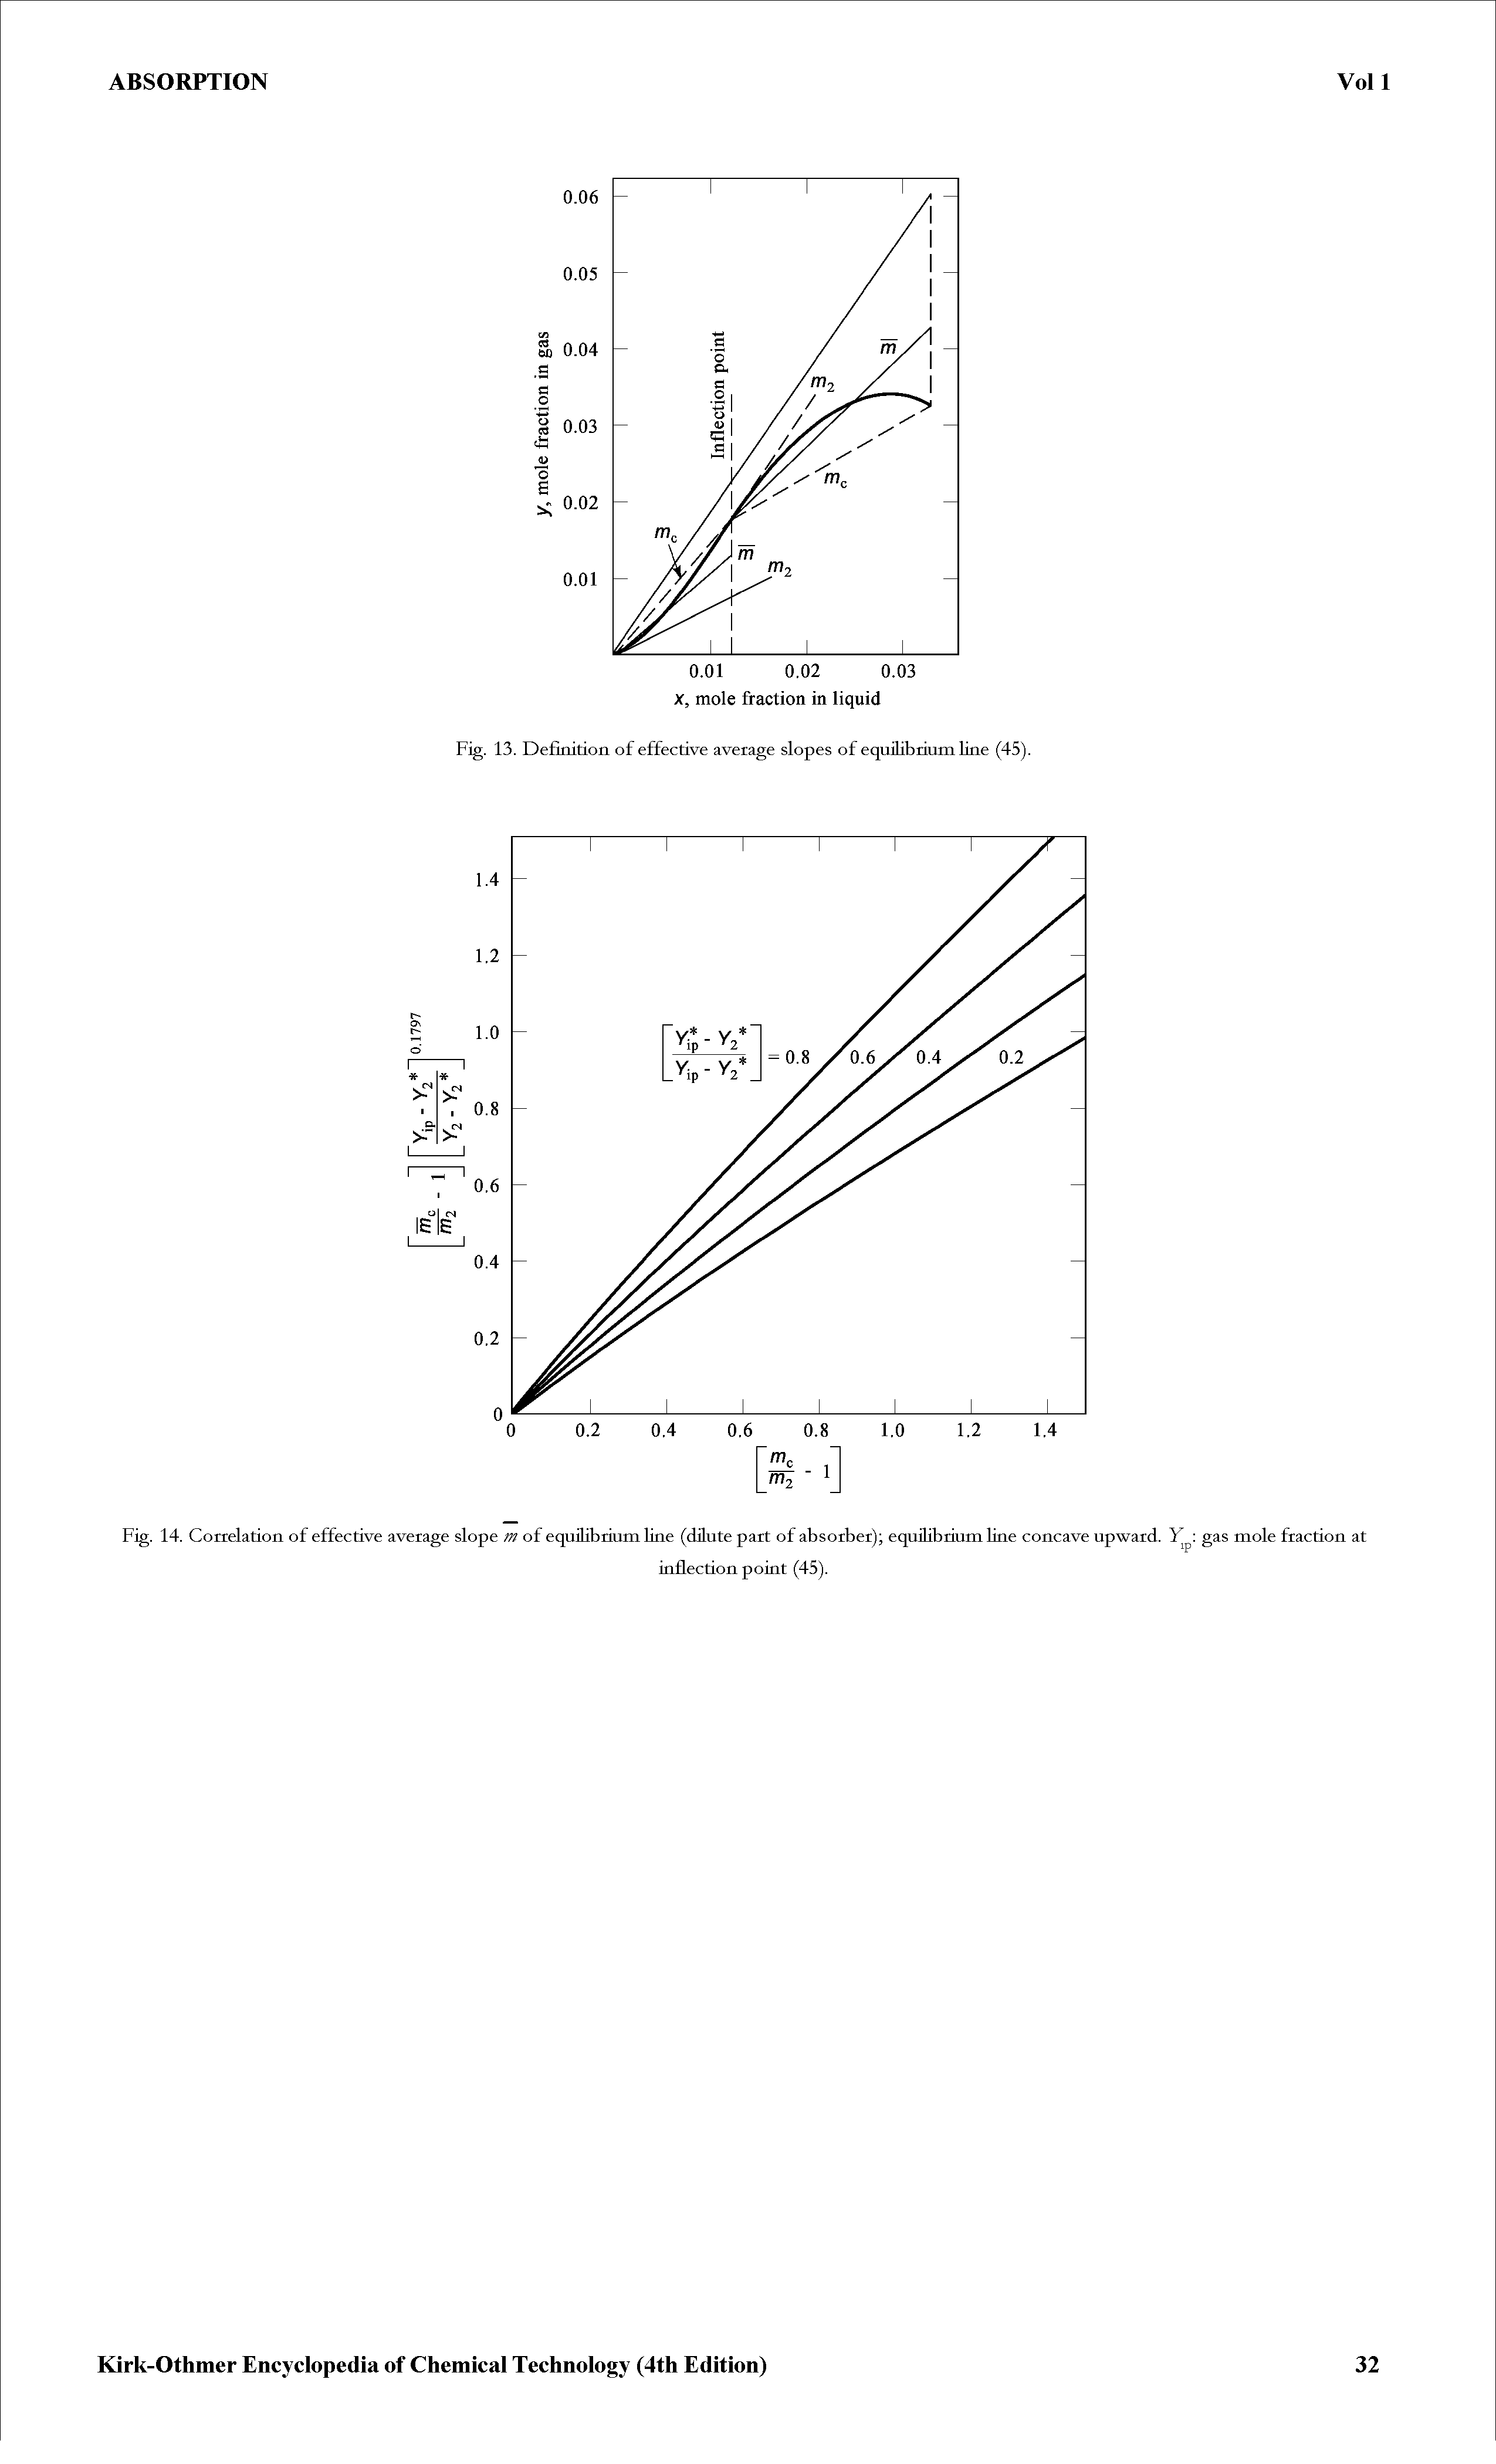 Fig. 13. Definition of effective average slopes of equilibrium line (45).